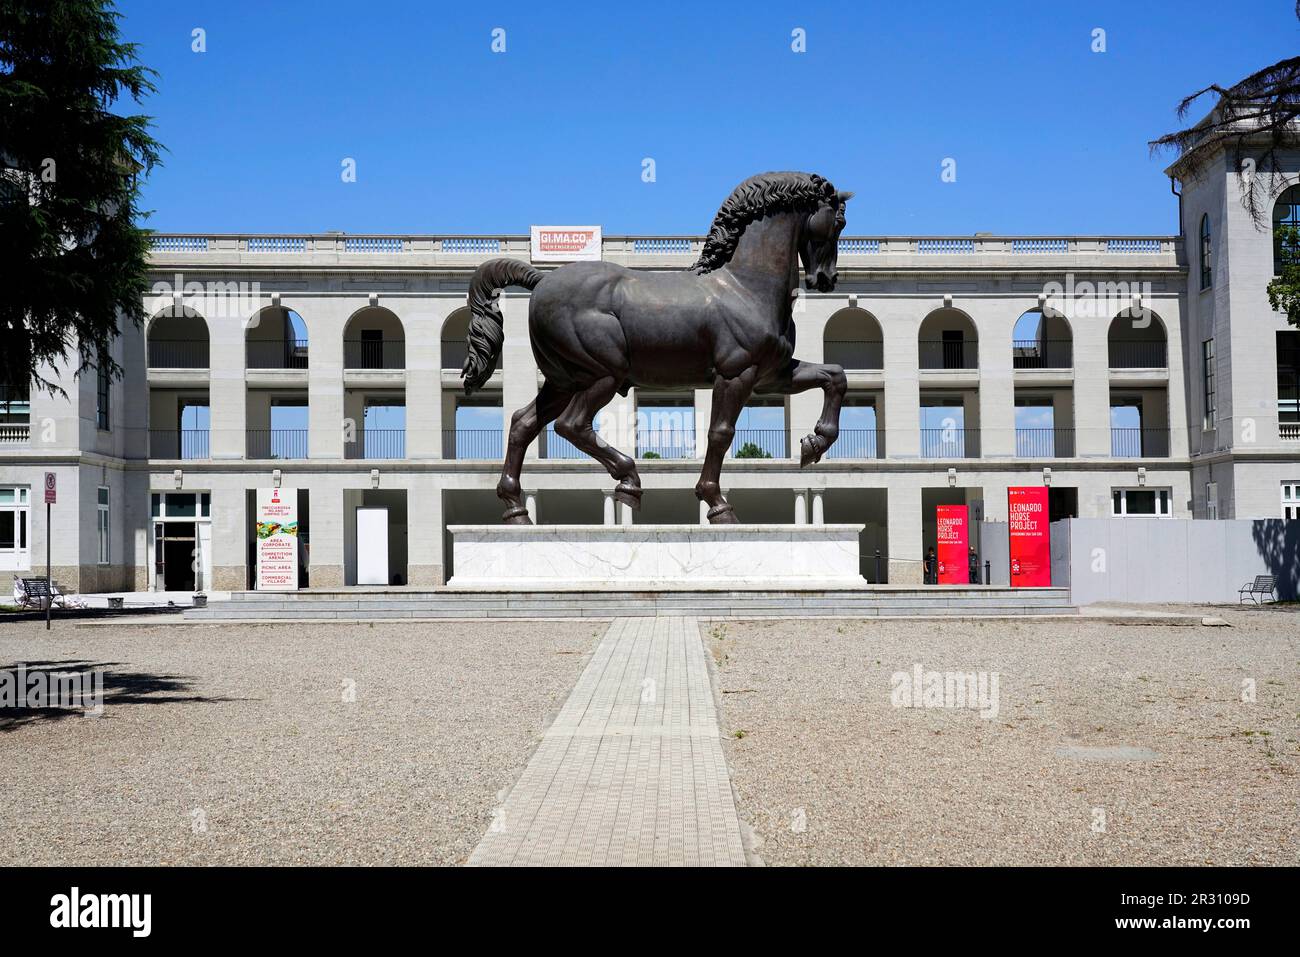 Le cheval de Léonard est un monument équestre dédié au duc Francesco Sforza de Milan, conçu par Léonard de Vinci de 1482 à 1493, moulé dans le bronz Banque D'Images